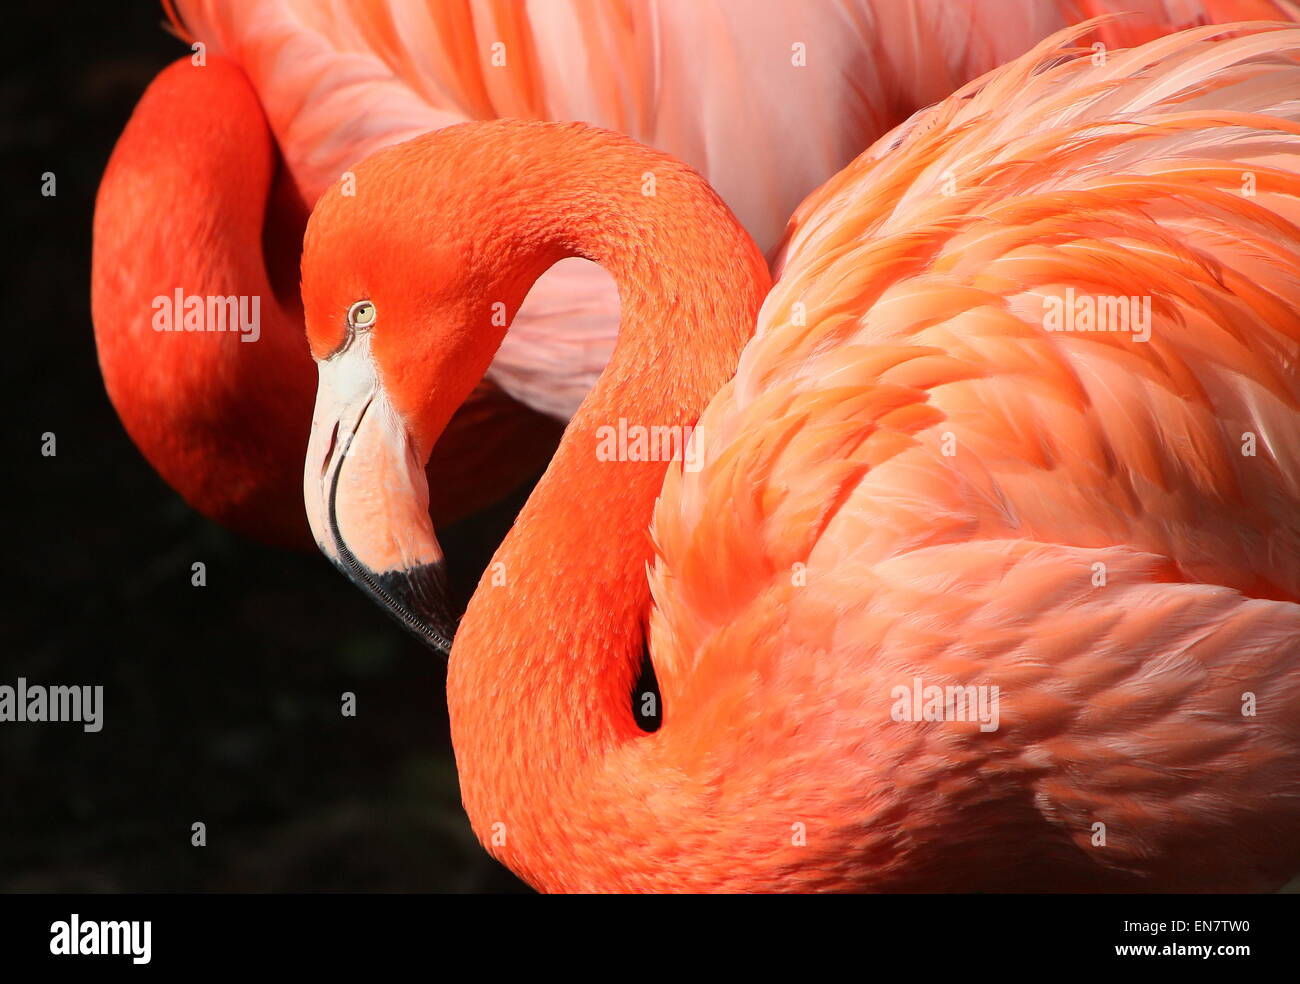 Americana o dei Caraibi flamingo ( Phoenicopterus ruber), primo piano della testa, un altro in background Foto Stock